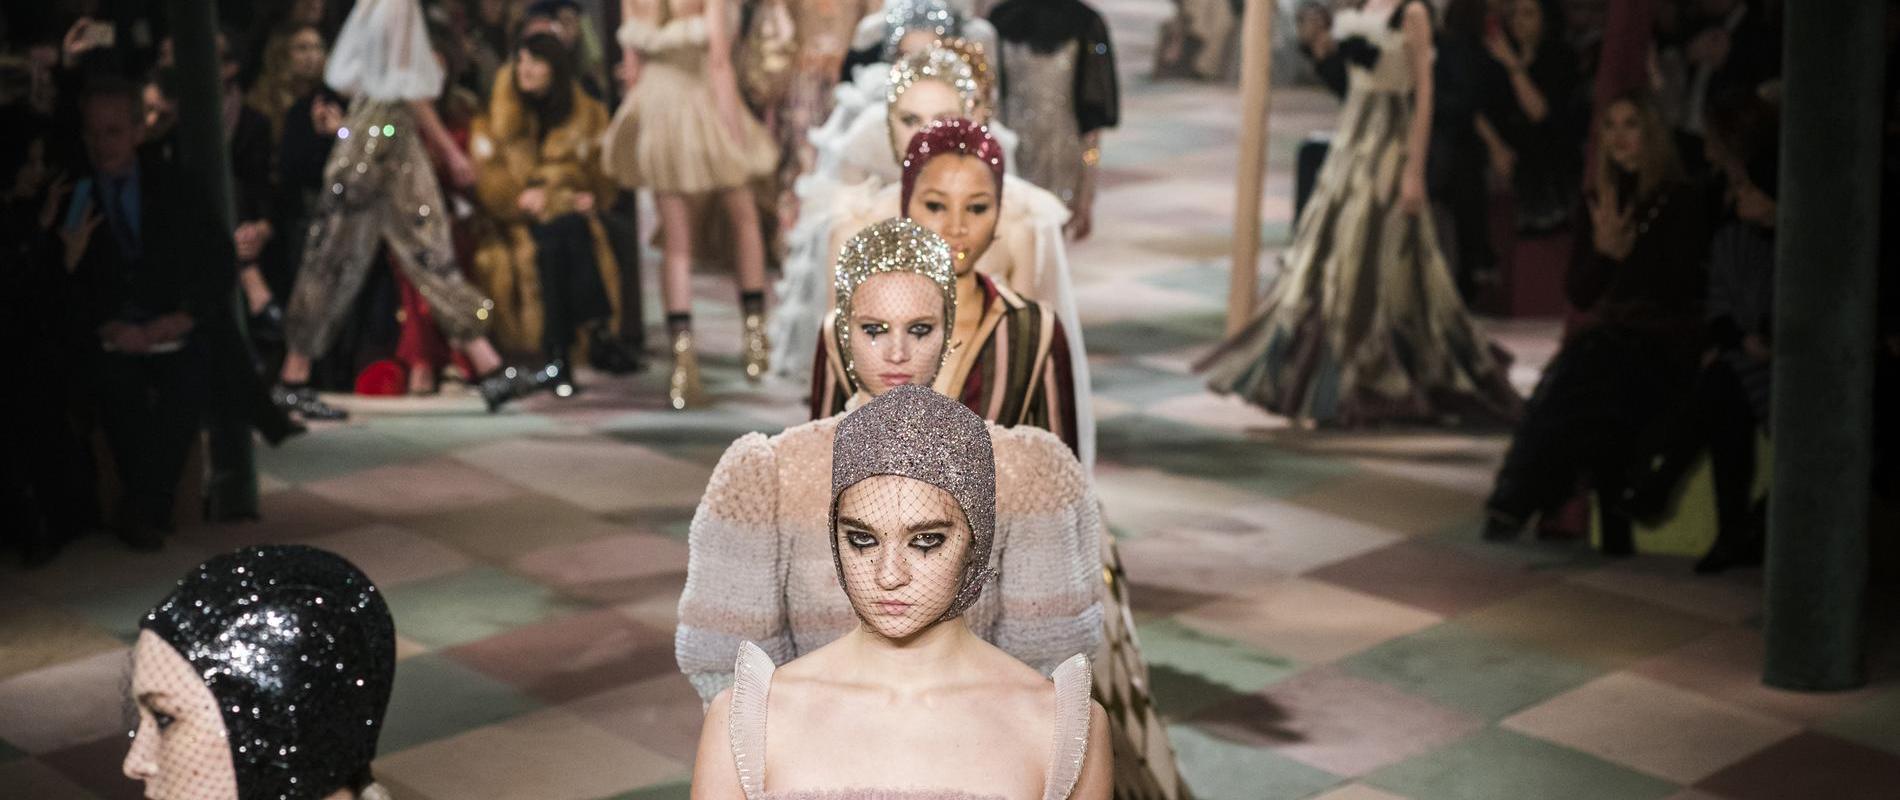 Défilé - Christian Dior - Couture printemps-été 2019